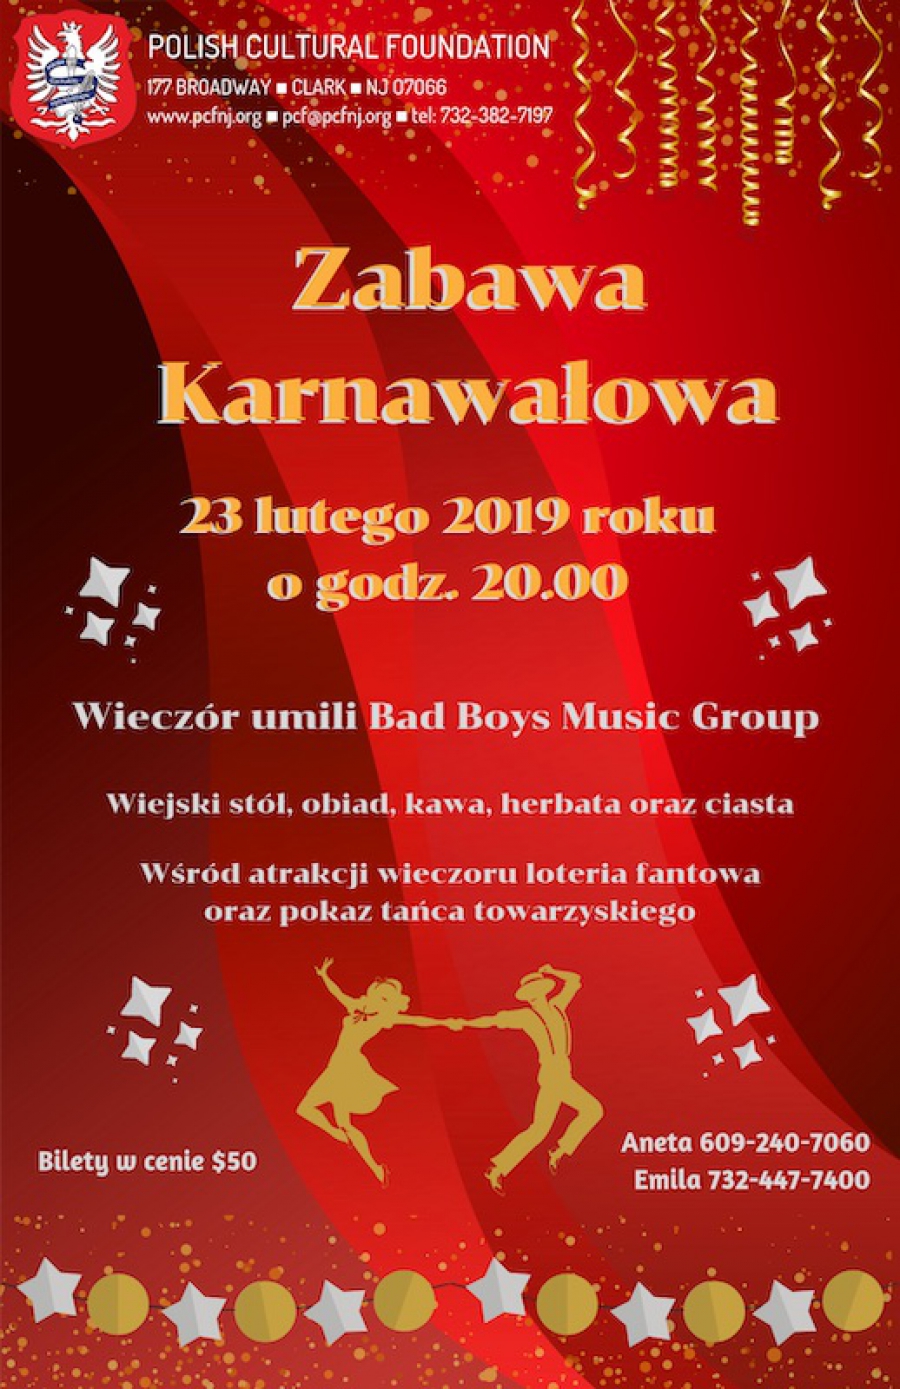 Zabawa Karnawałowa 2019